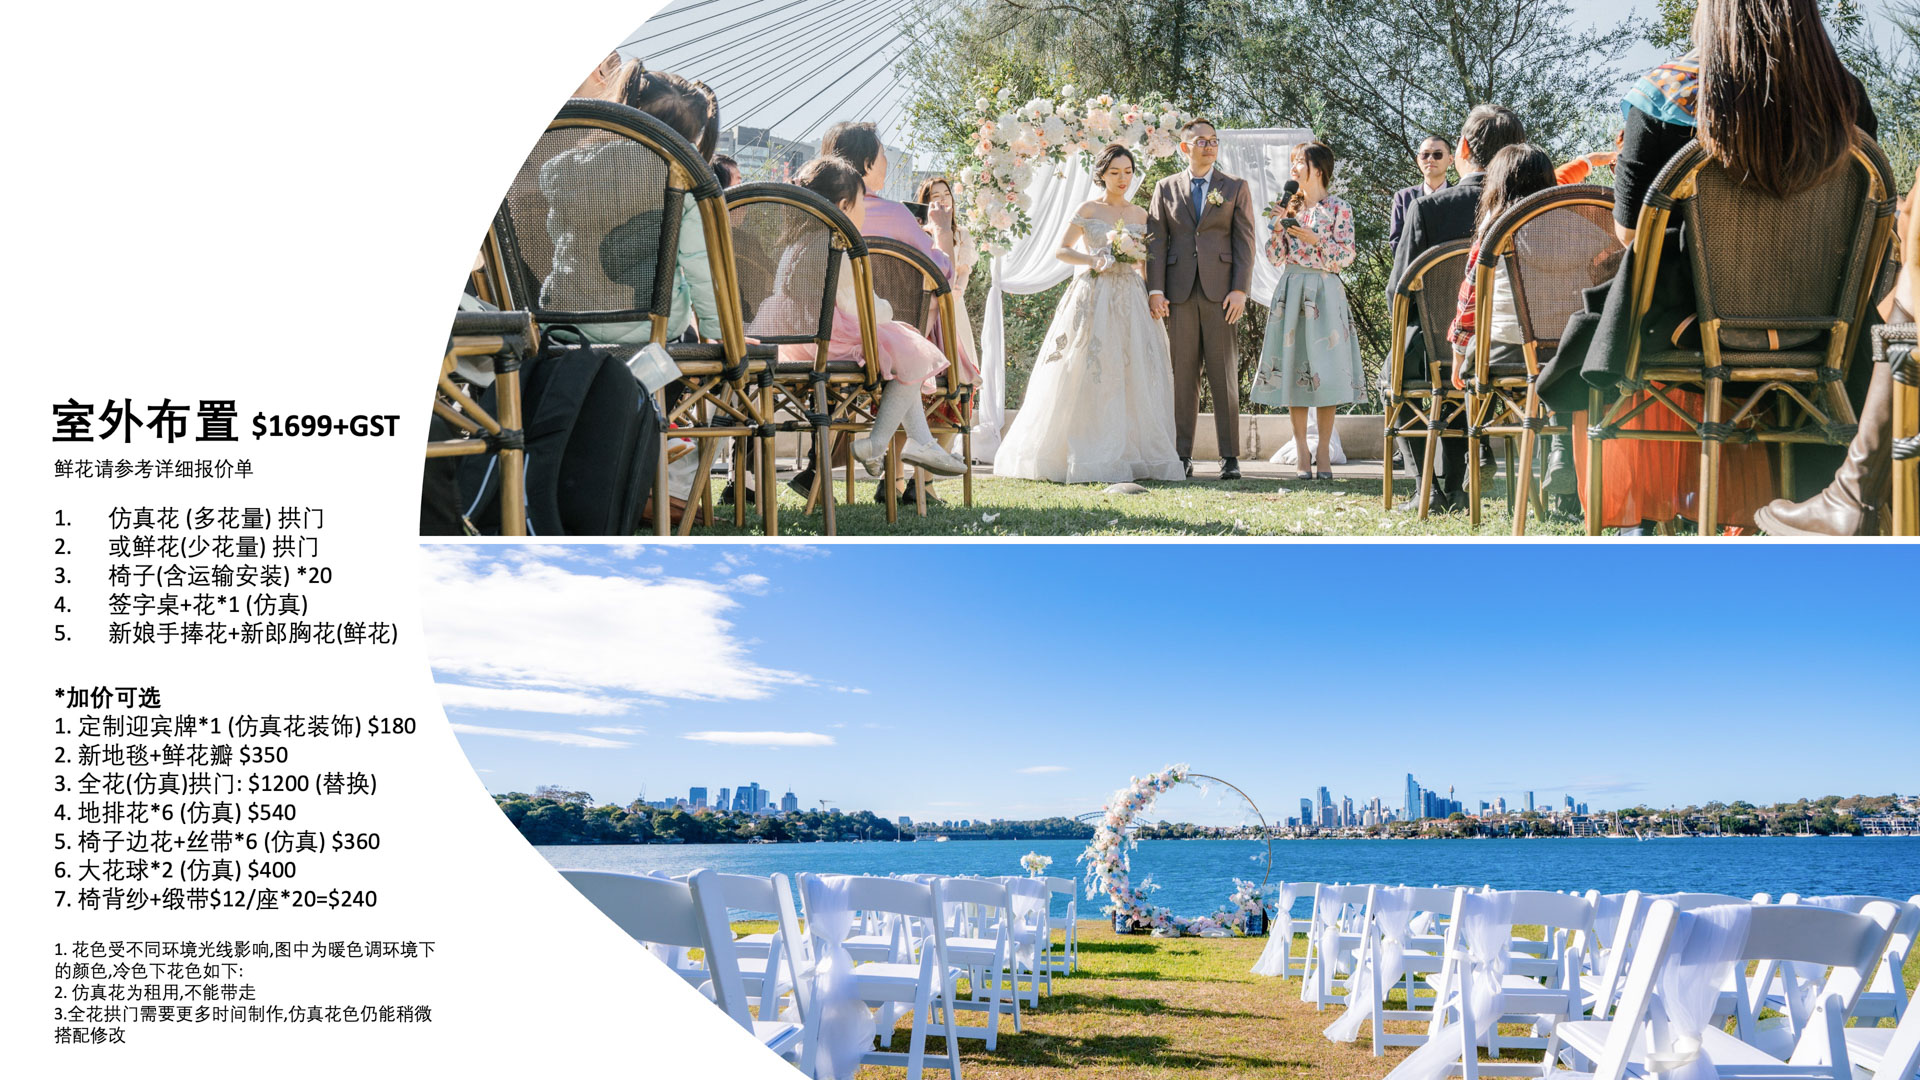 悉尼顶尖婚纱婚礼摄影|婚礼摄像|婚礼布置策划|商业广告摄像TVC|房地产广告摄影摄像|视频制作 Xmanstudio 商标